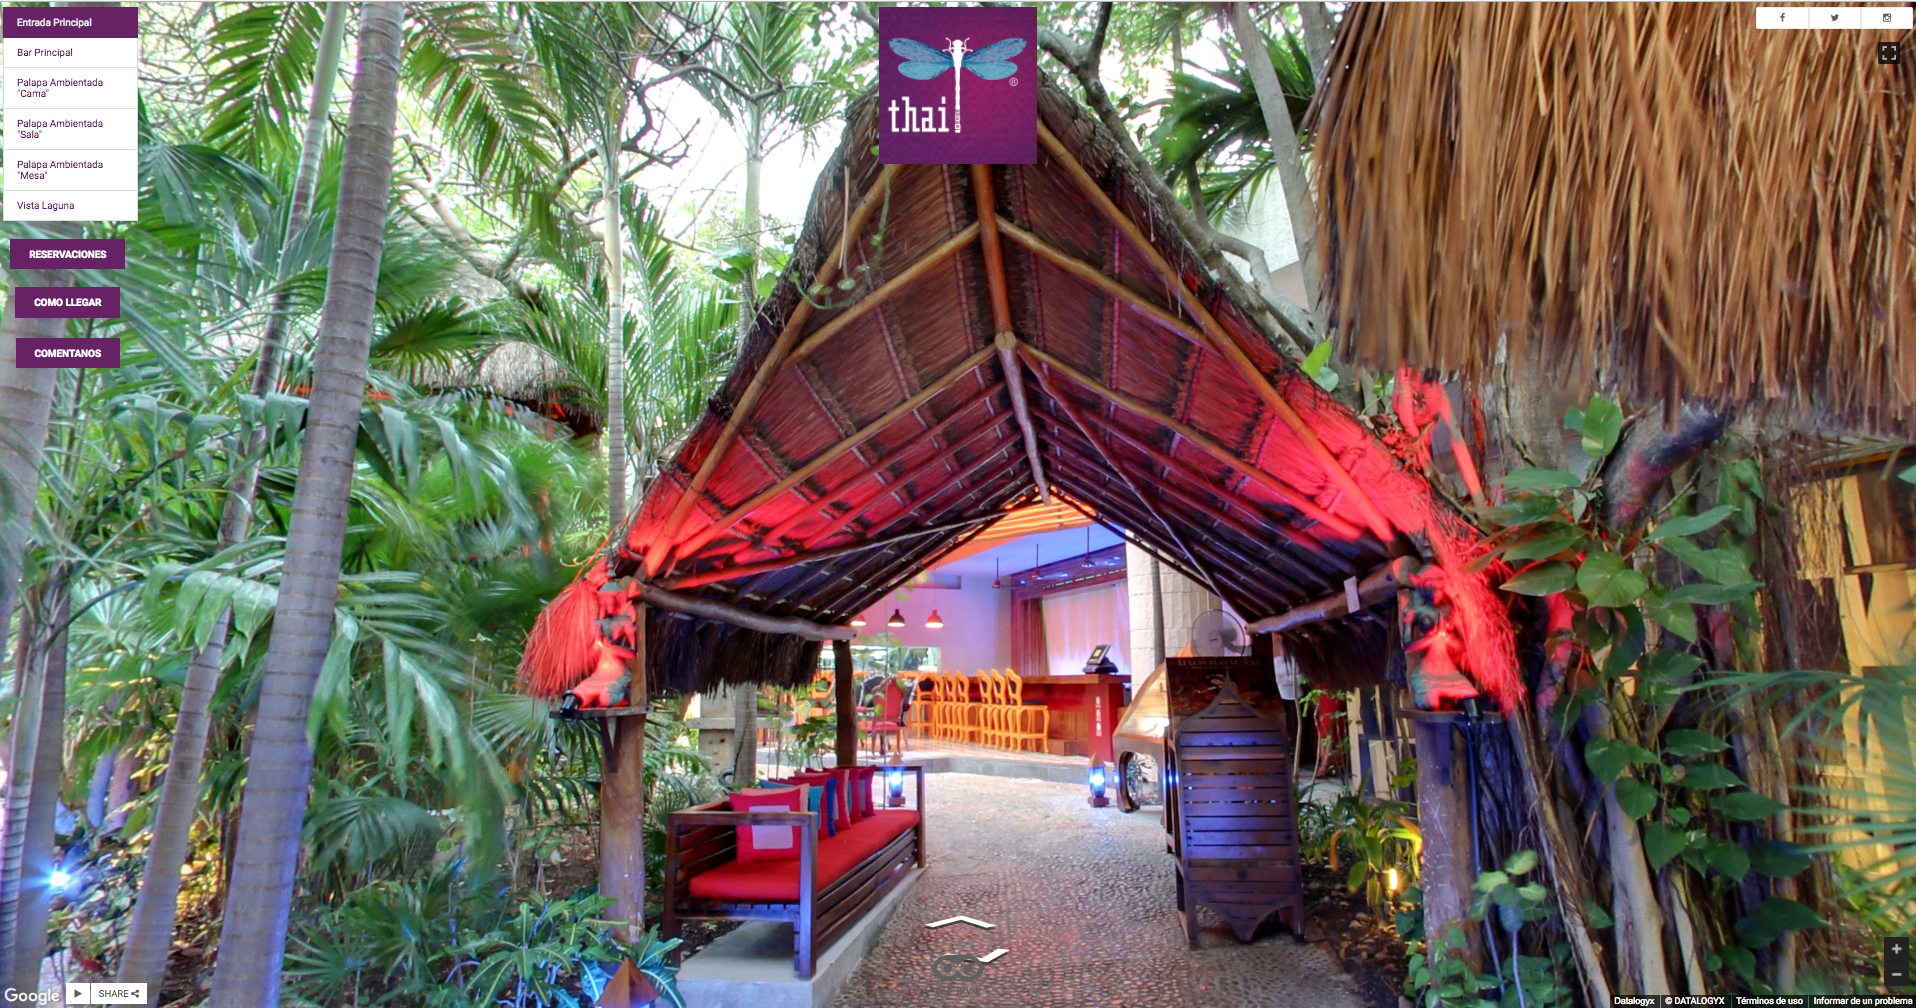 Restaurante-Thai-Cancun-cdmx-coapa-recorrido-virtual-google-street-view-concesionaria-datalogyx